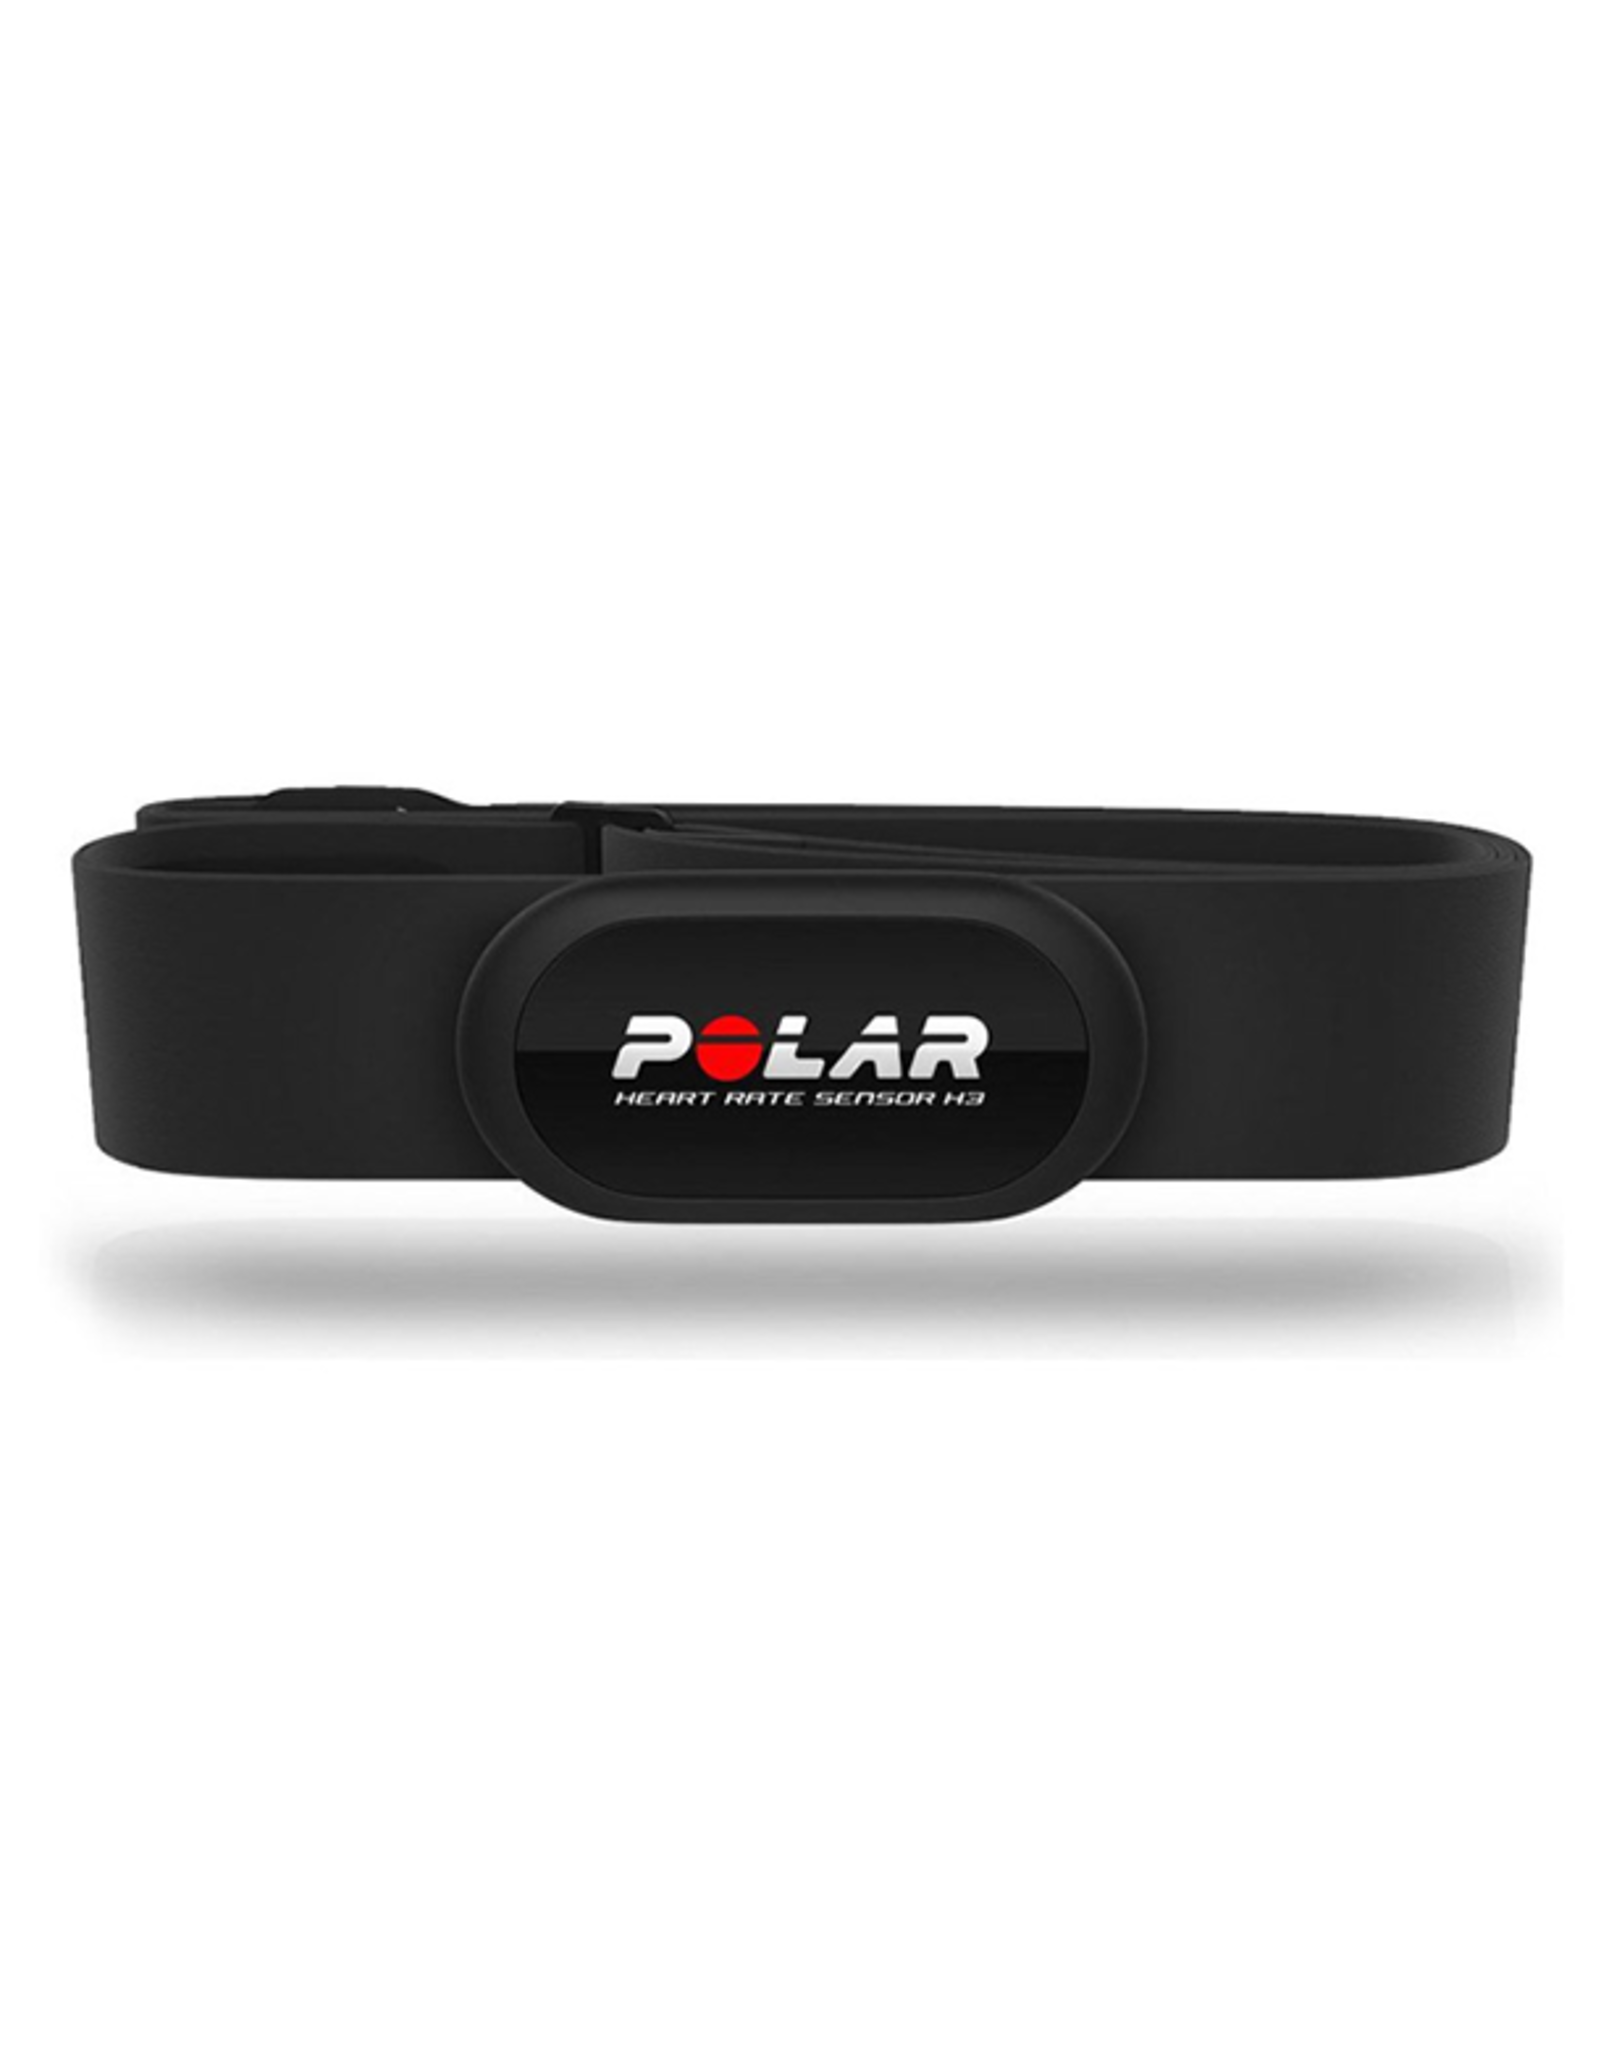 Polar Polar RCX3 F GPS